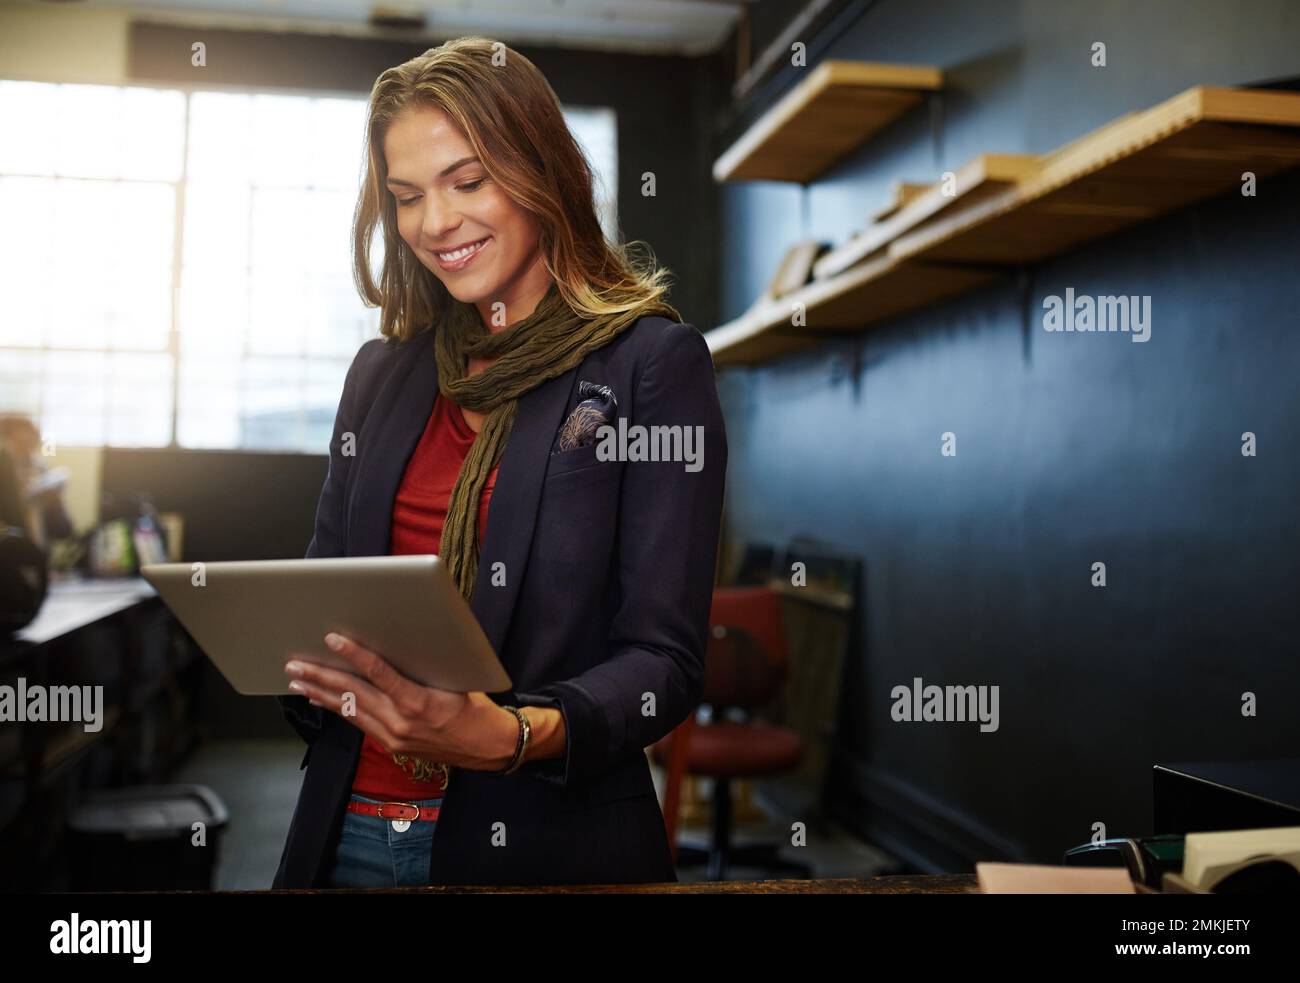 Ihr Geschäft online zu vermarkten. Eine junge Geschäftsinhaberin, die in ihrem Geschäft ein digitales Tablet verwendet. Stockfoto